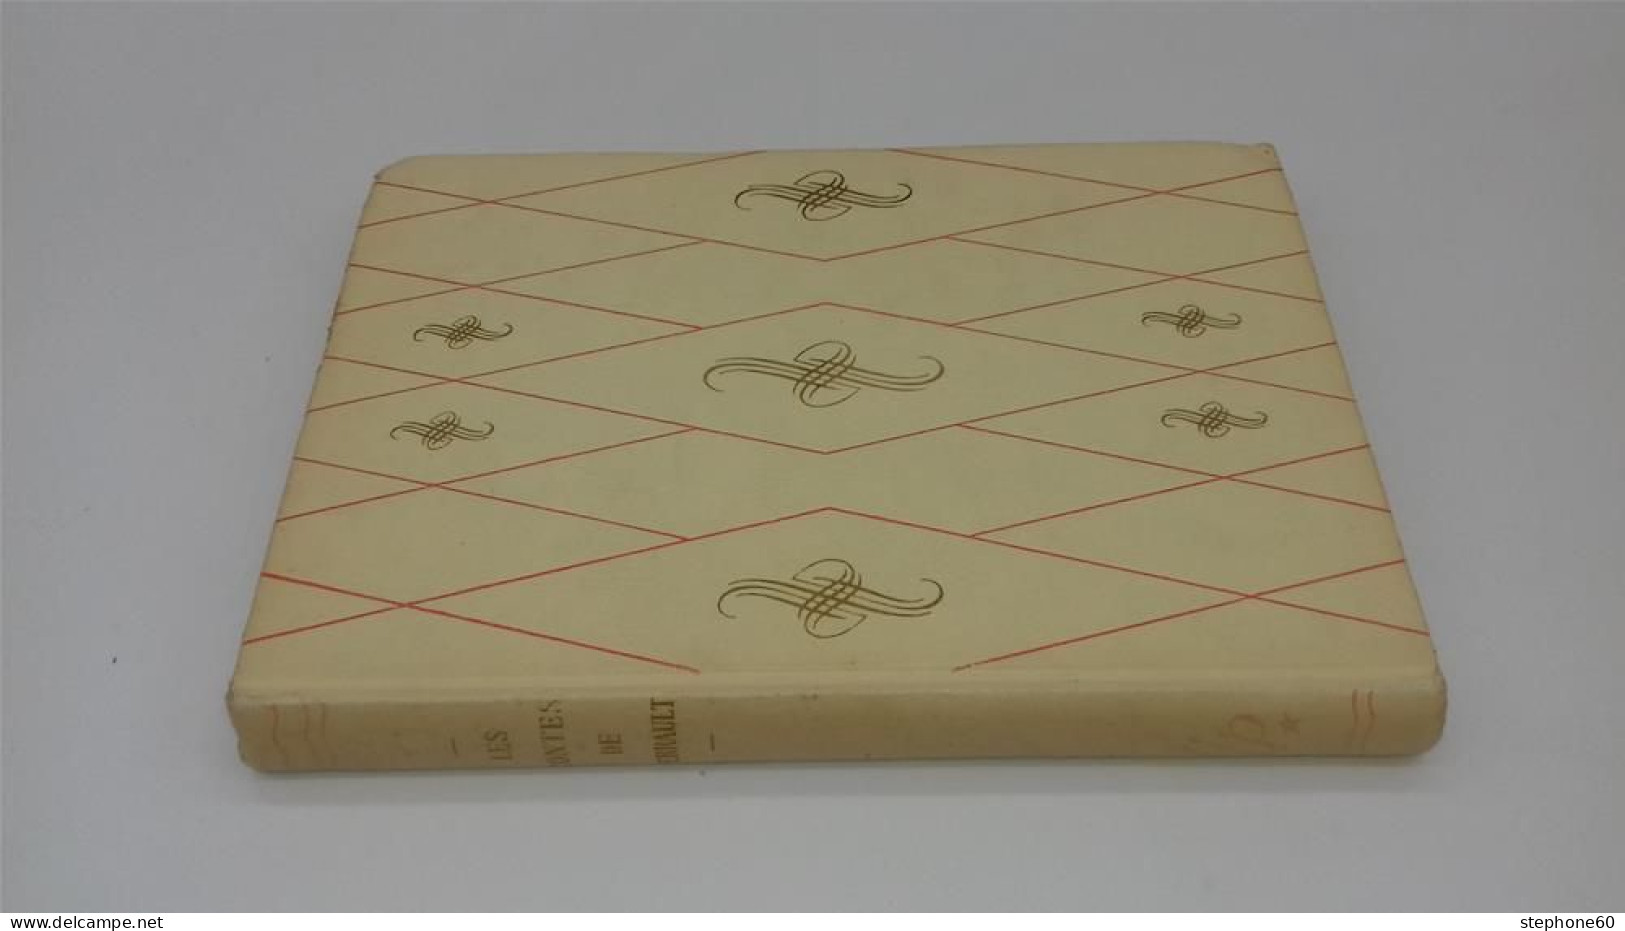 998 - (435) Les Contes De Perrault - Illustrations Raoul Auger 1950 - Rouge Et Or - Hachette